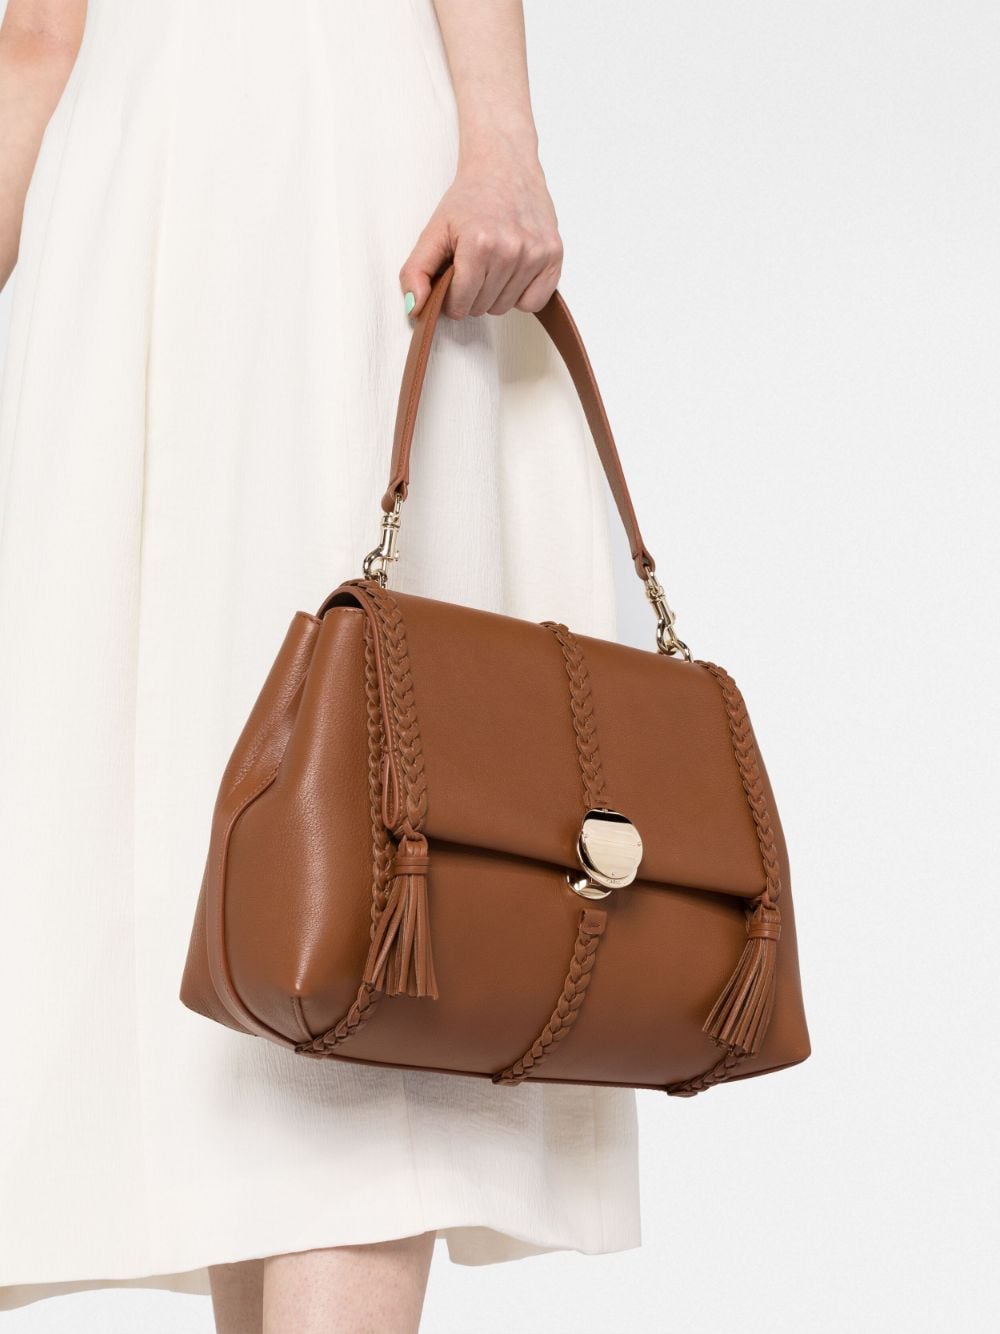 CHLOÉ Penelope Medium Caramel Brown Leather Shoulder Bag for Women